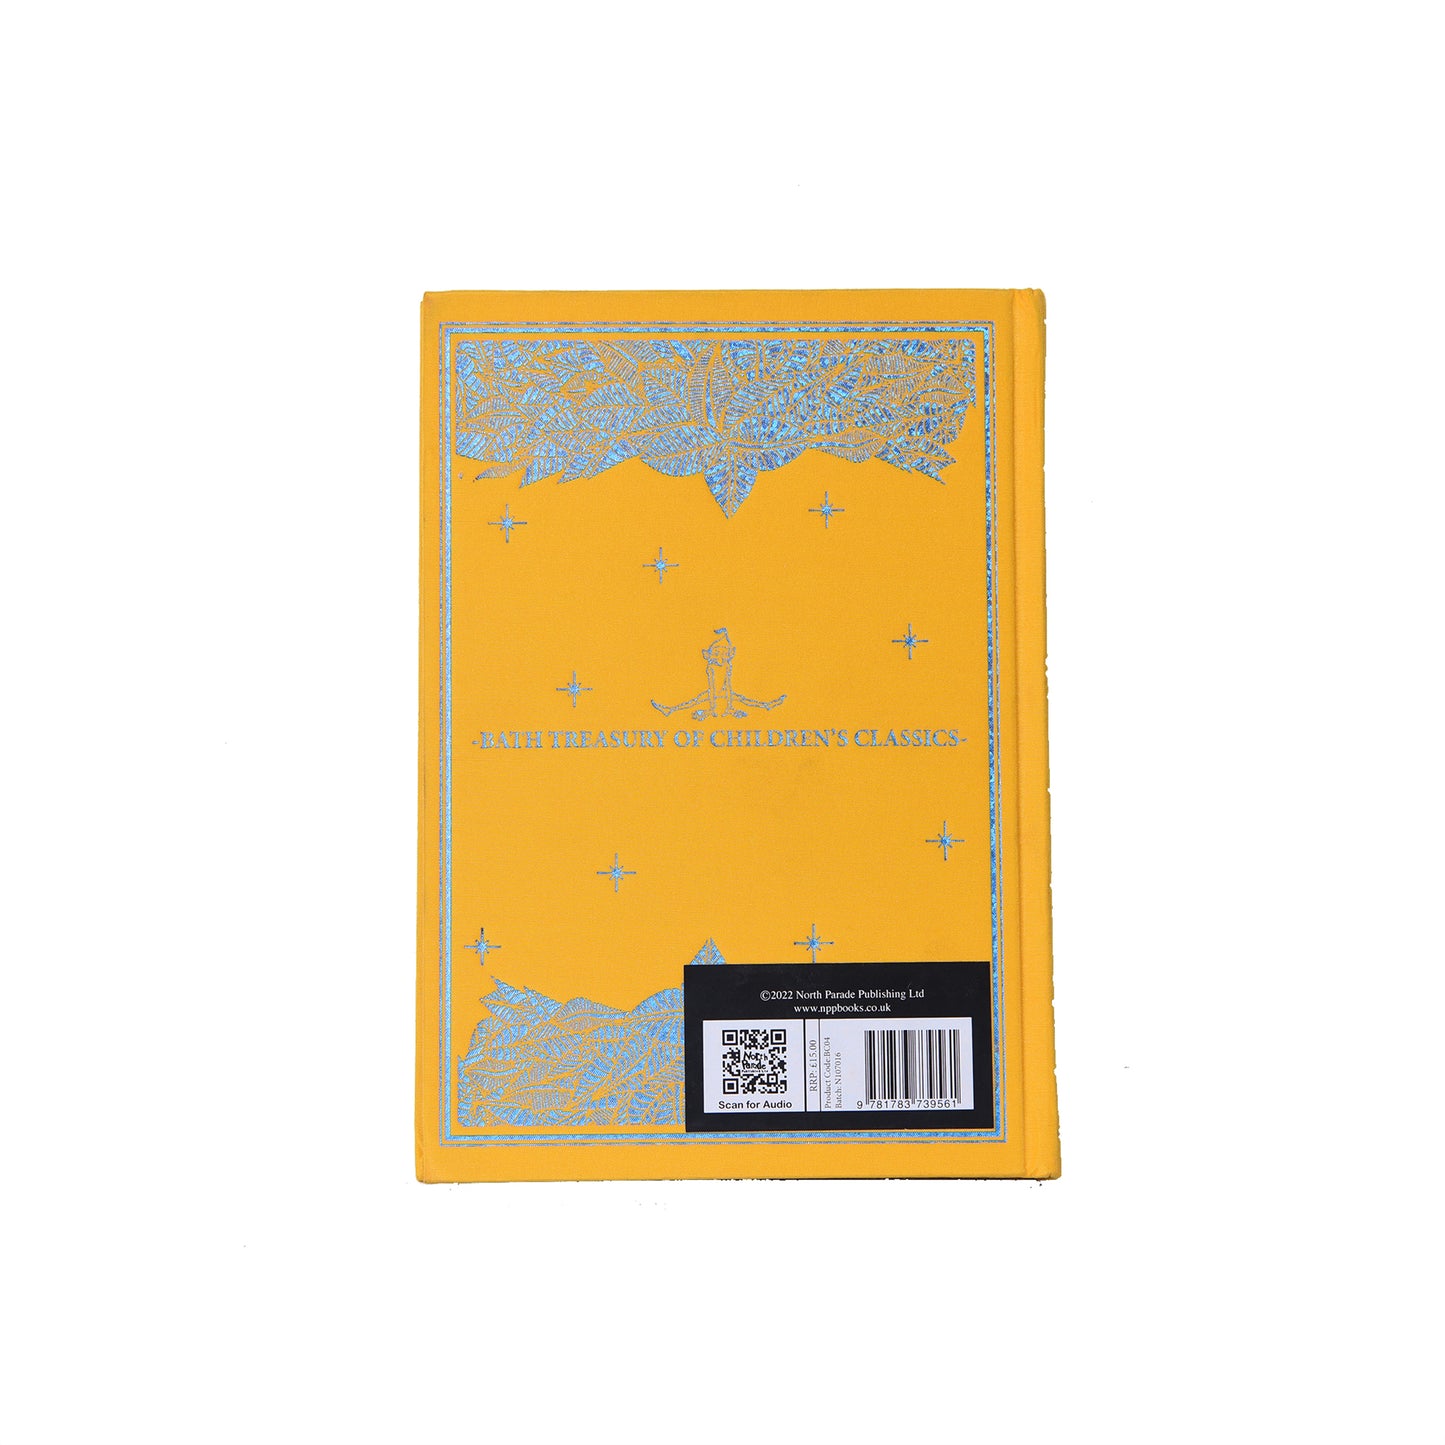 The Jungle Book Bath Treasury of Children's Classics) (Bath Classics) Hardcover